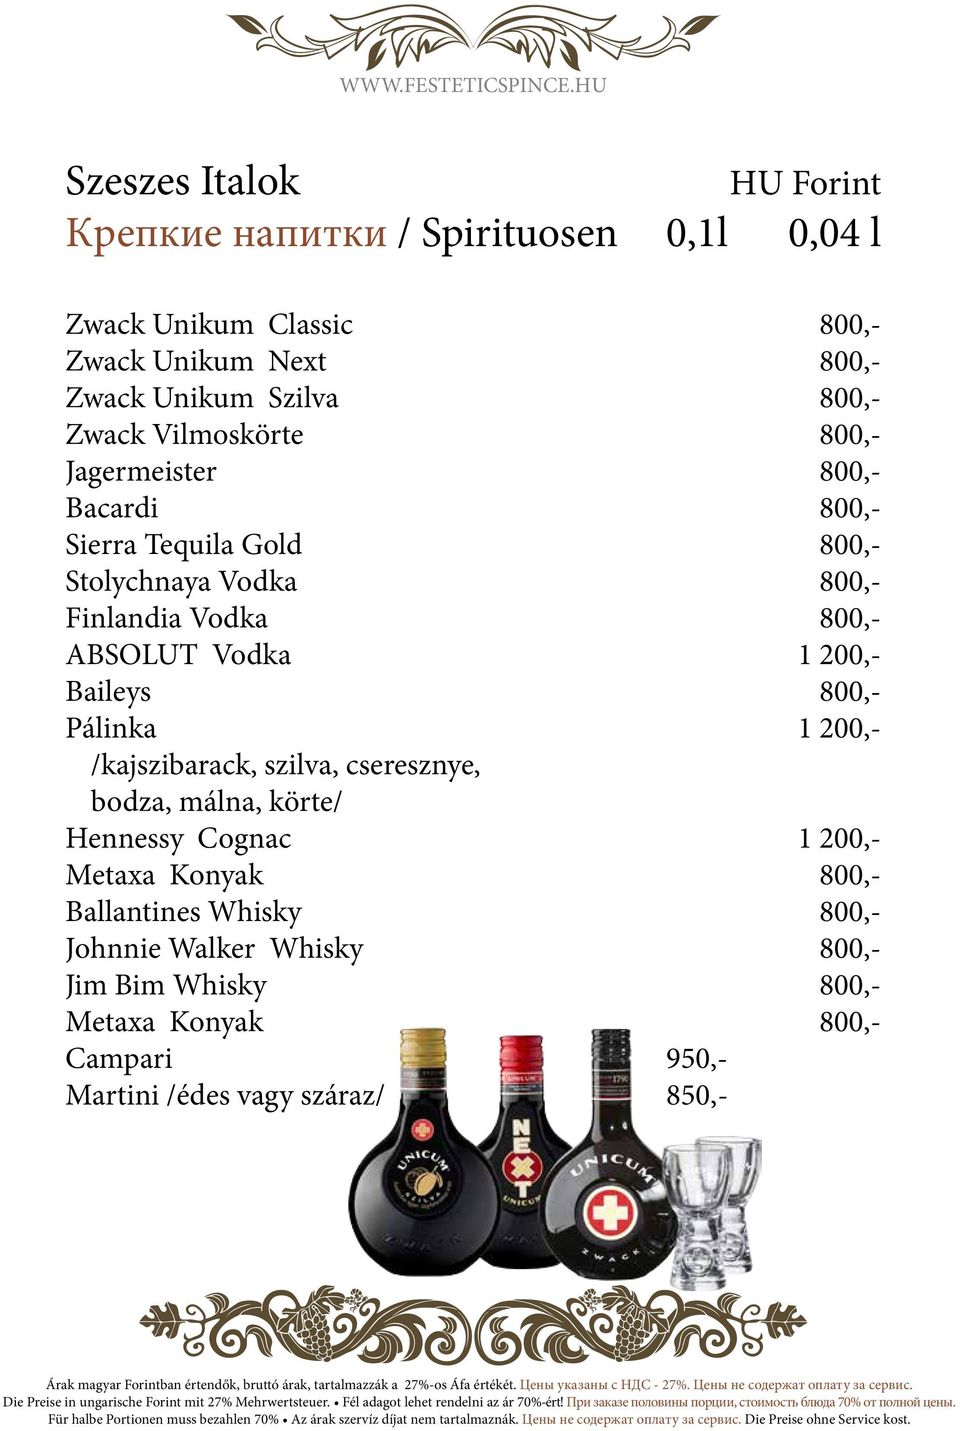 Vodka 1 200,- Baileys 800,- Pálinka 1 200,- /kajszibarack, szilva, cseresznye, bodza, málna, körte/ Hennessy Cognac 1 200,- Metaxa Konyak